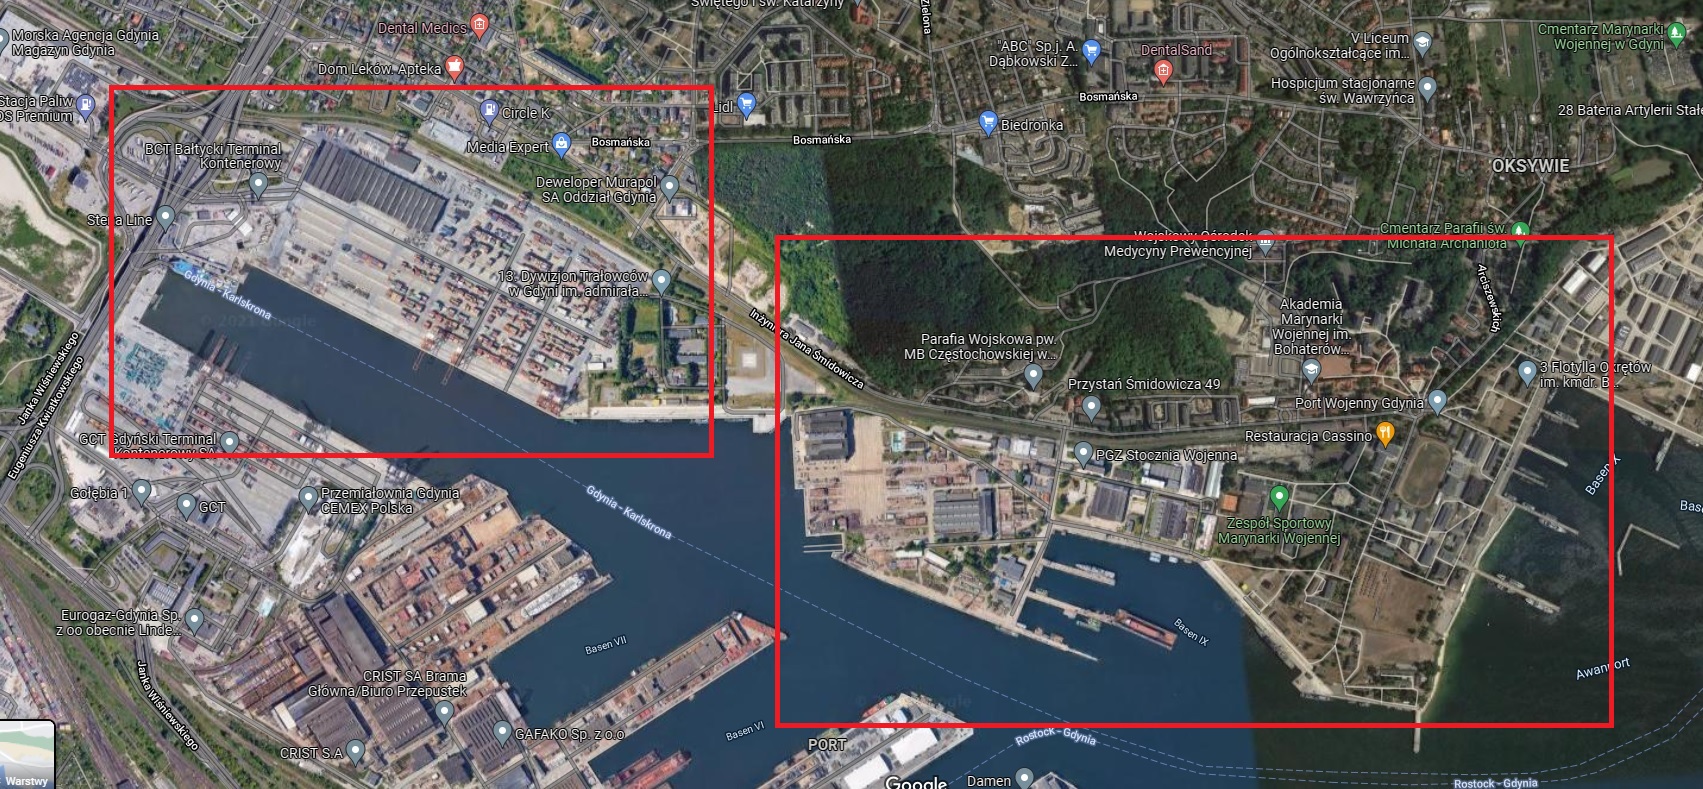 Bałtycki Terminal Kontenerowy w sąsiedztwie Stoczni Marynarki Wojennej RP. Fot. Google Maps